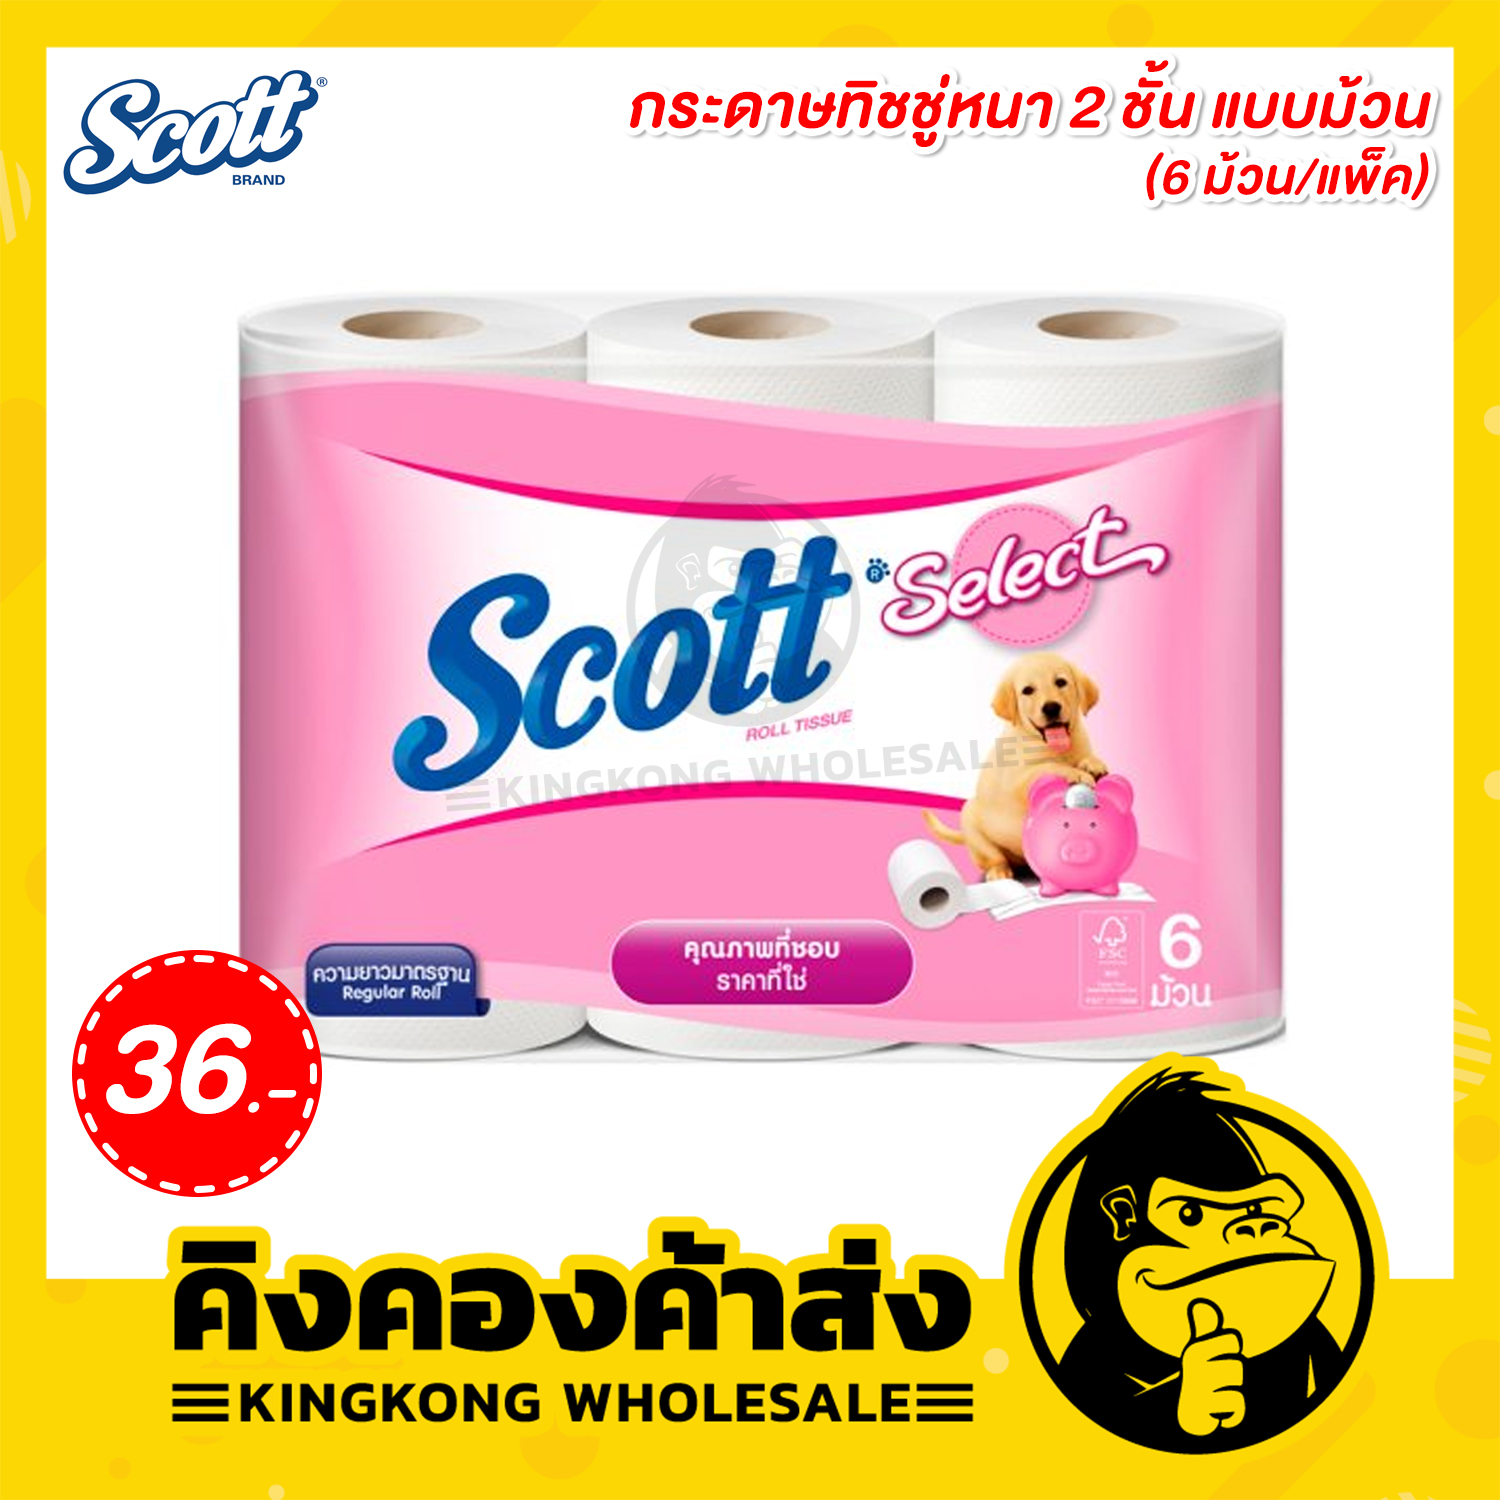 Scott Select Roll Tissue กระดาษชำระแบบม้วน สก๊อตต์ ซีเลคท์ (6 ม้วน/แพ็ค)